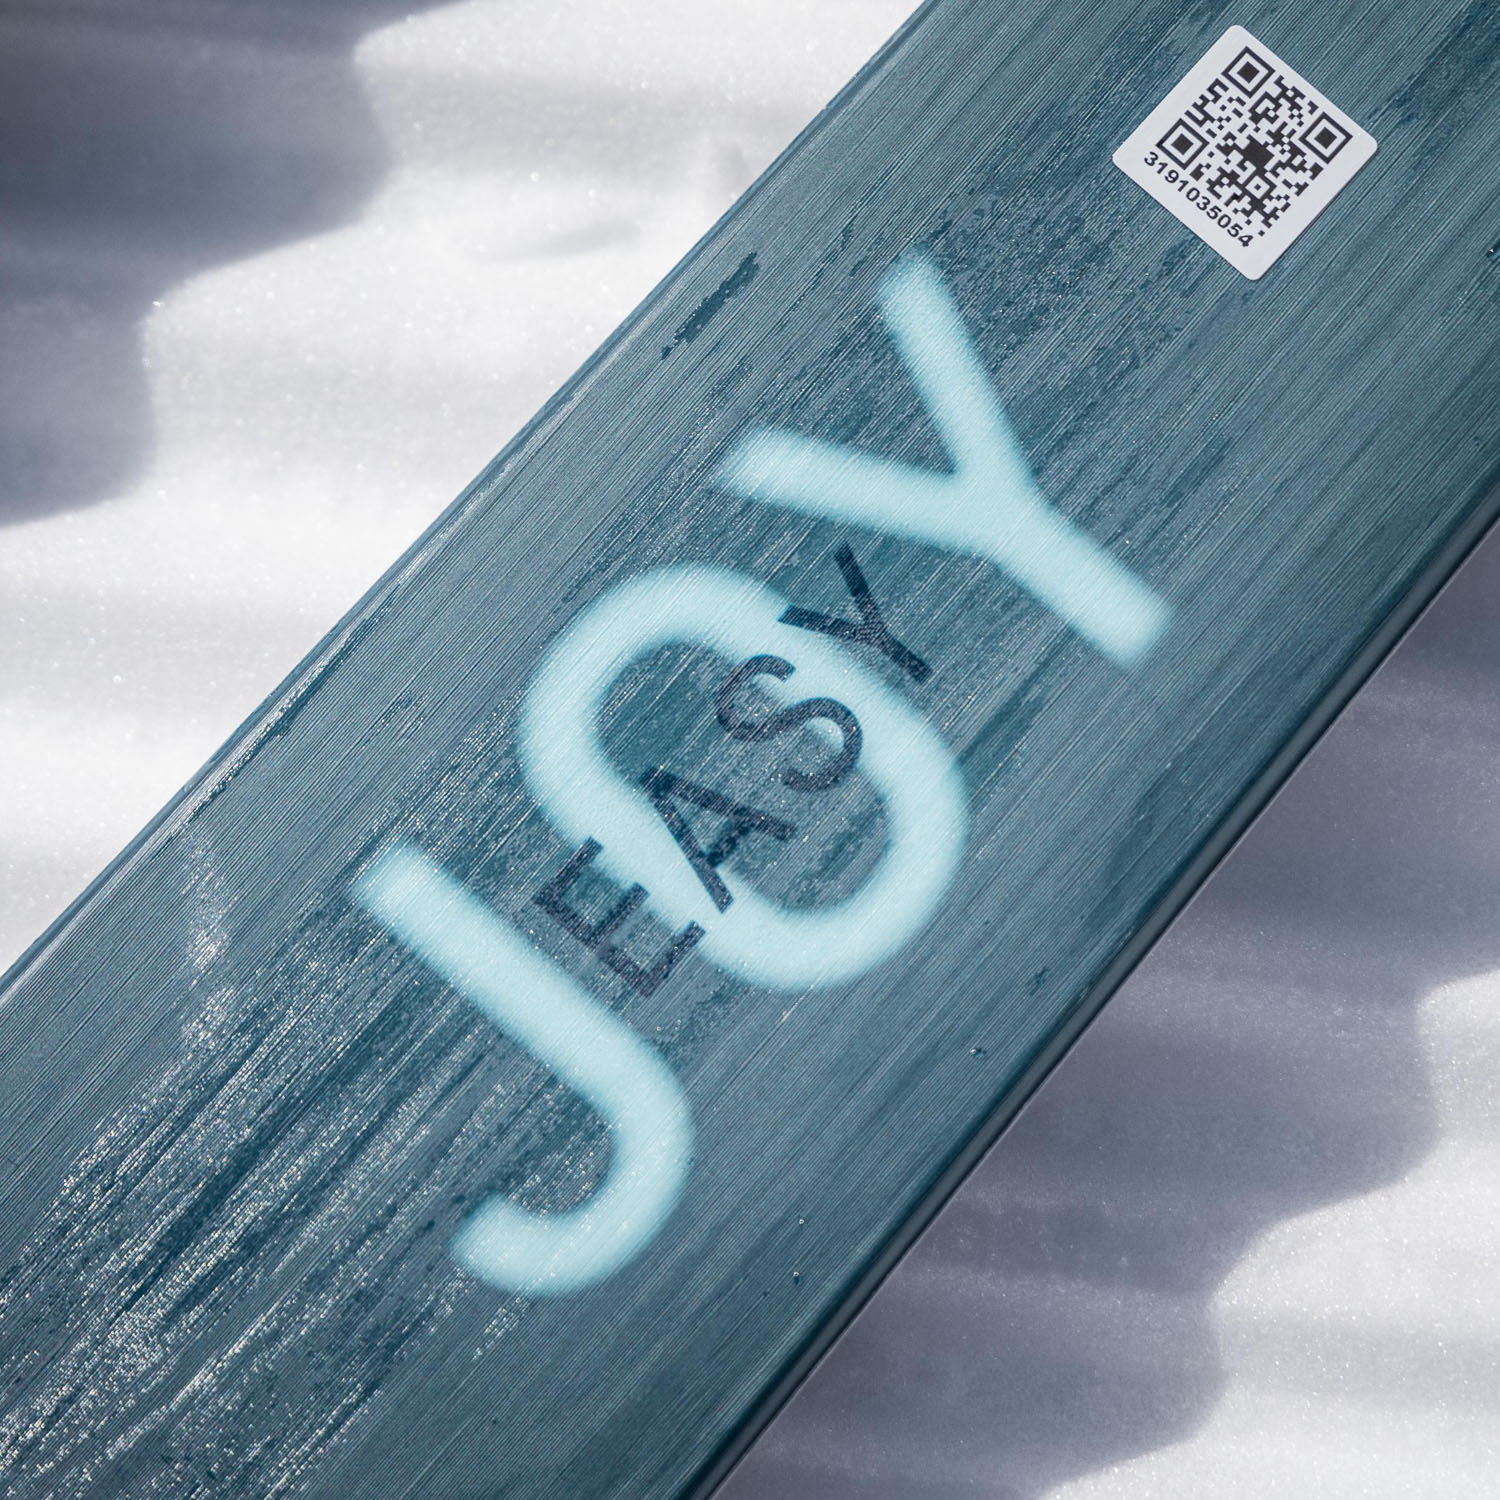 Горные лыжи с креплениями HEAD Easy Joy SLR Joy Pro+JOY 9 GW SLR BR 85 [H] Blue